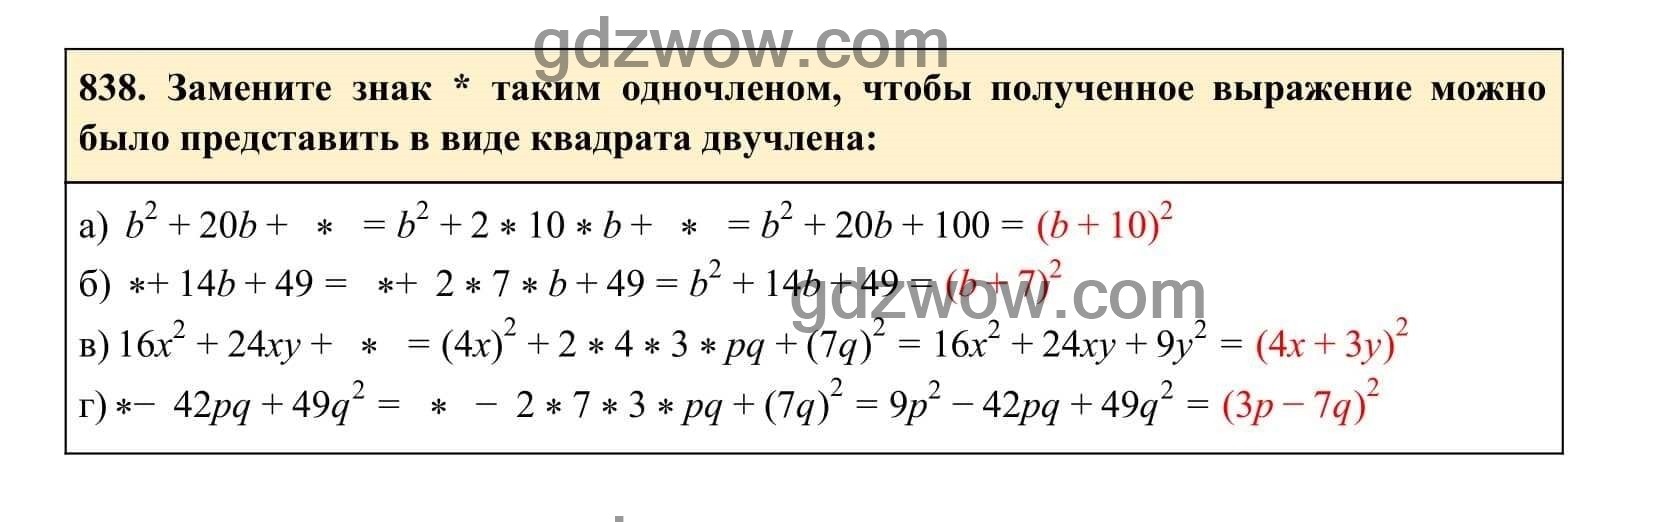 Упражнение 838 - ГДЗ по Алгебре 7 класс Учебник Макарычев (решебник) - GDZwow